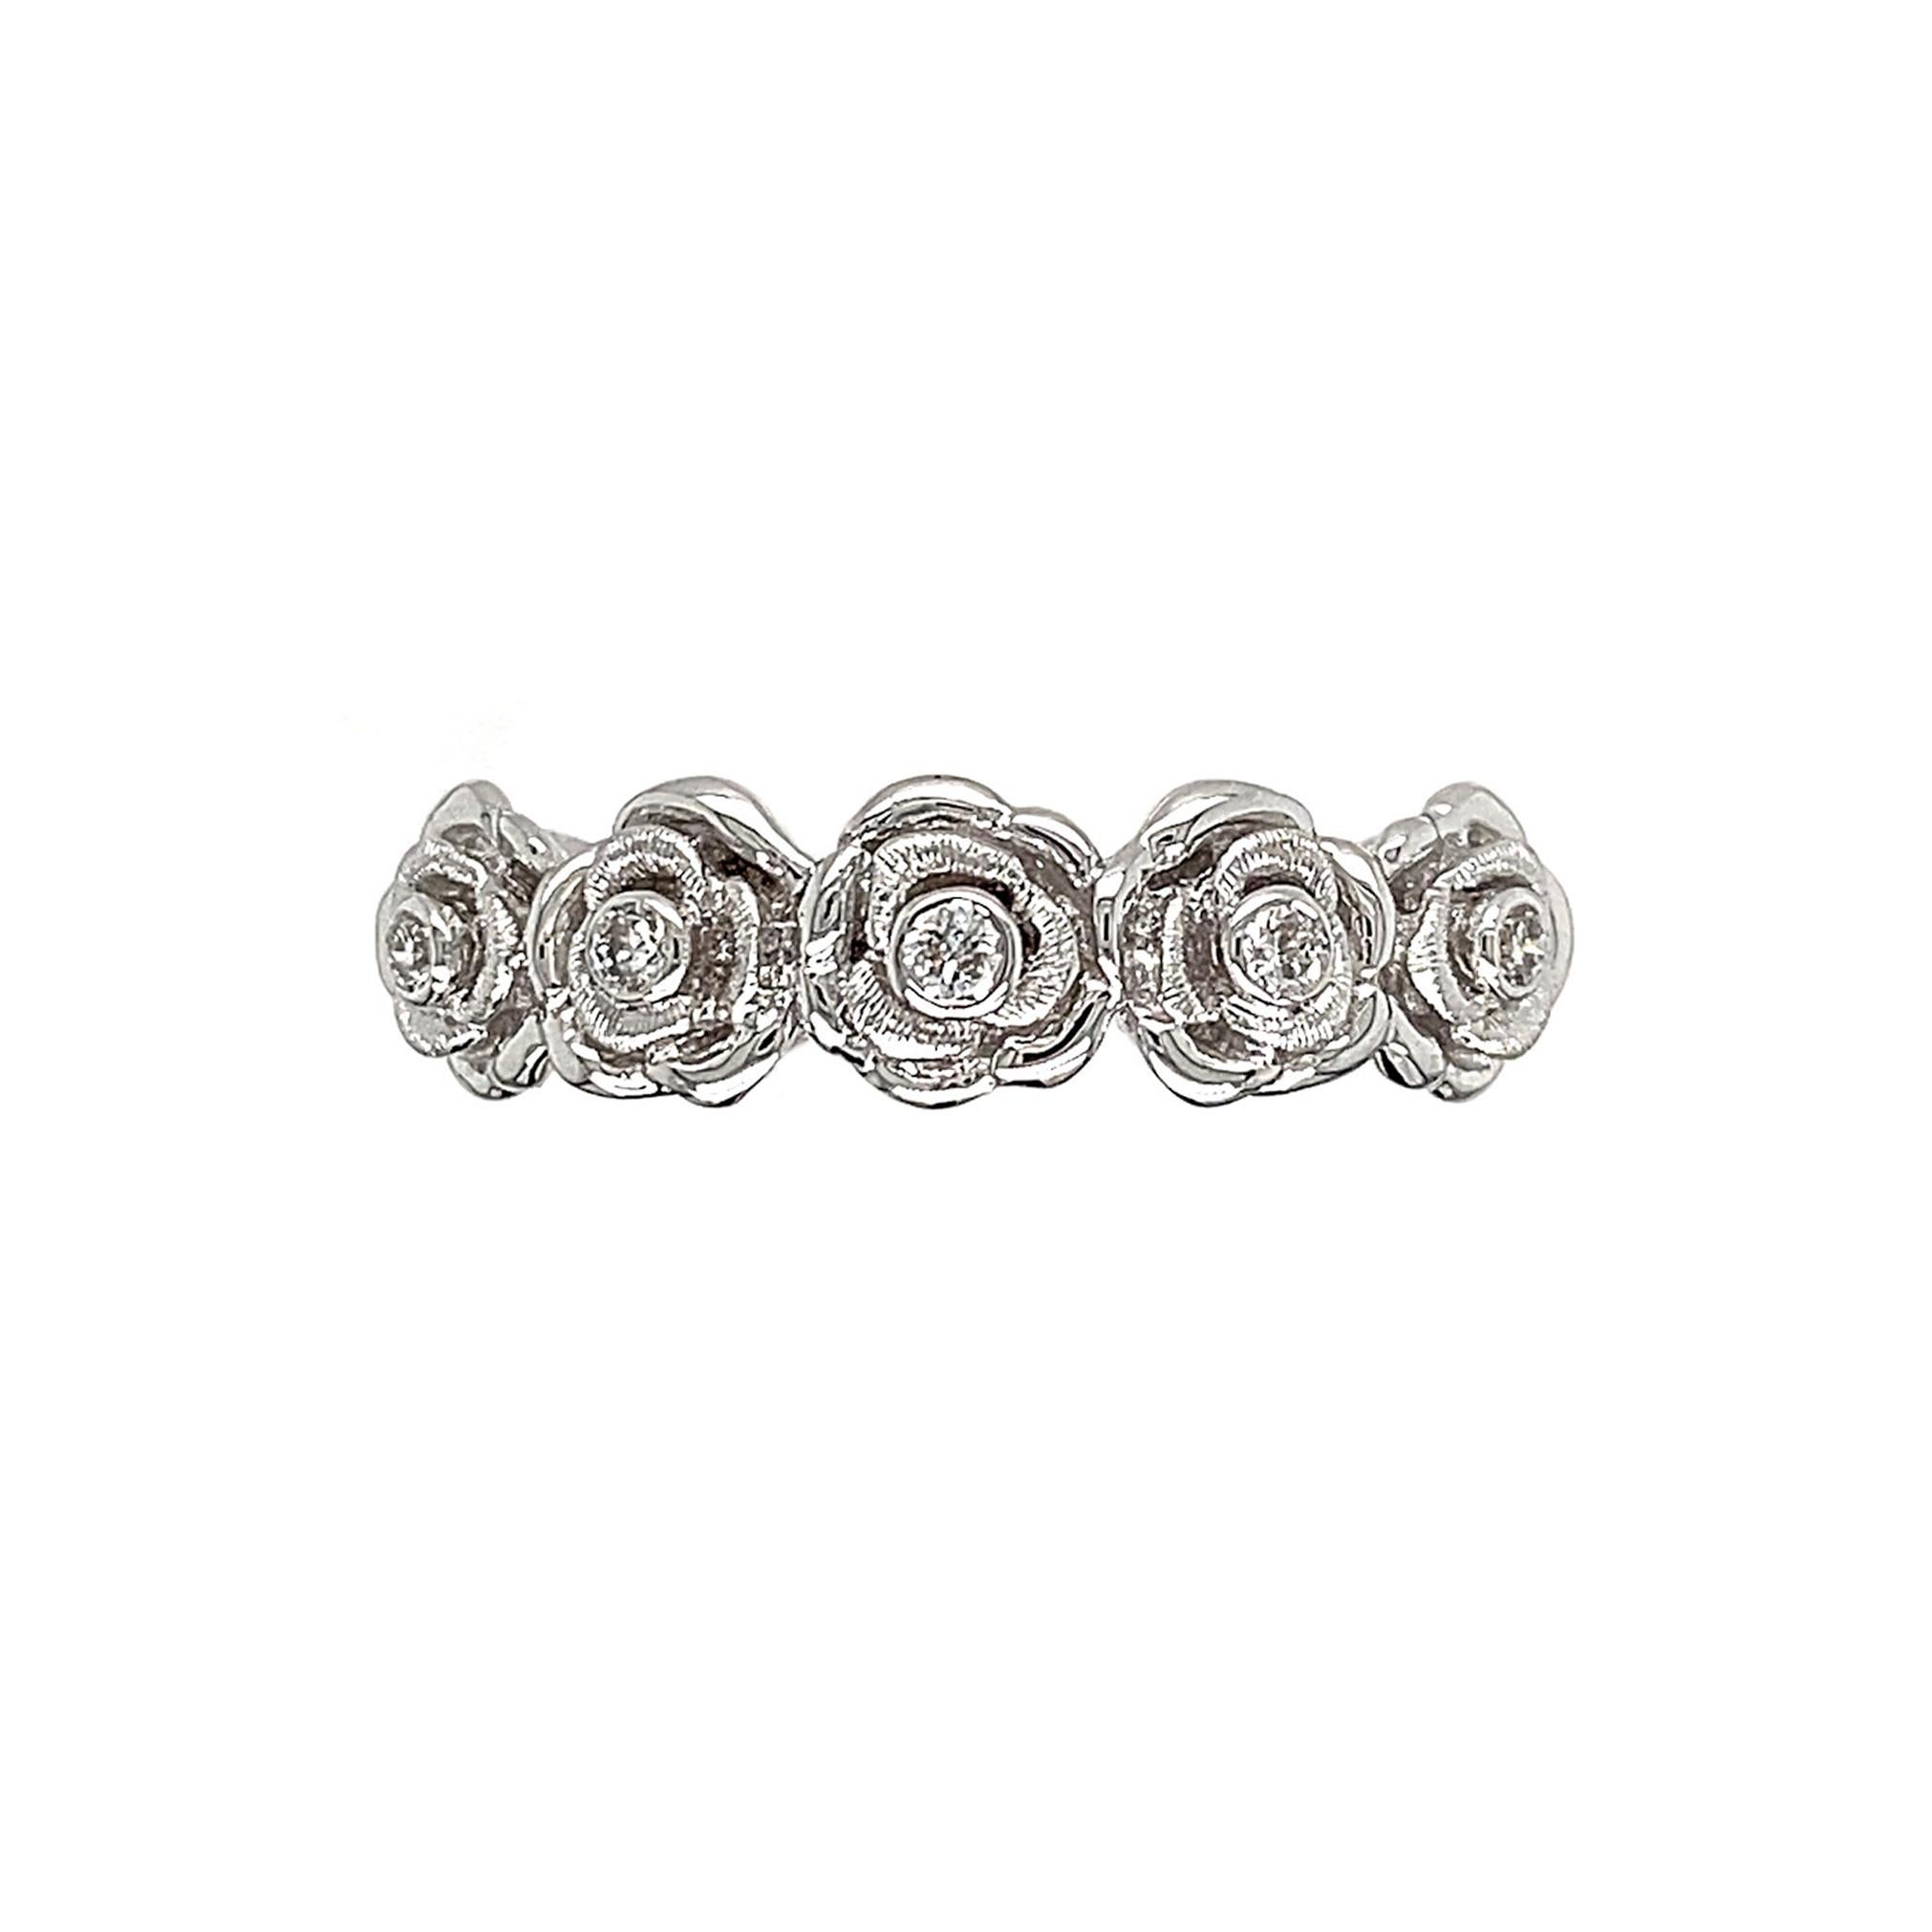 Blühende Rosen - das universelle Symbol für Liebe, Schönheit und Dankbarkeit. 

Der 5 Blooming Roses Diamond Band Ring von Dilys zeigt eine Reihe von Rosen, die jeweils mit einem runden Solitärdiamanten von insgesamt 0,09 ct geschmückt sind. Dieses